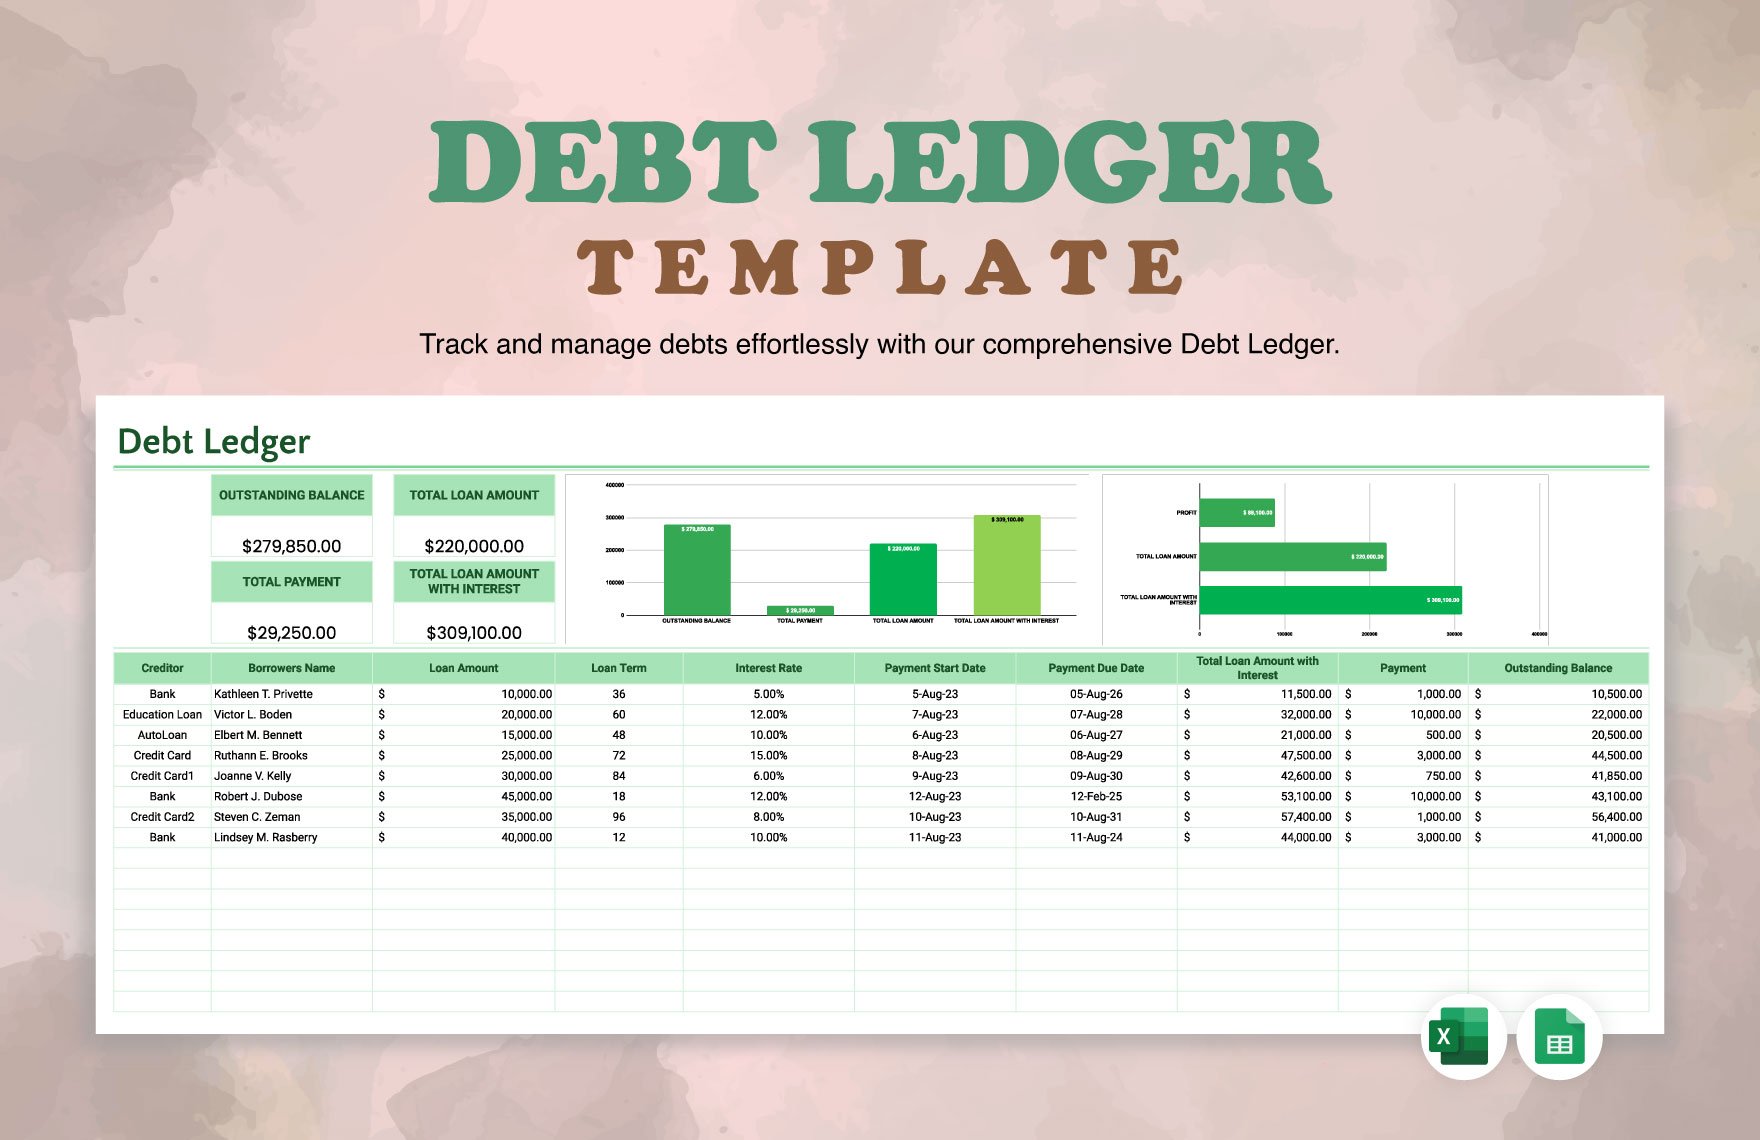 Debt Ledger Template in Excel, Google Sheets